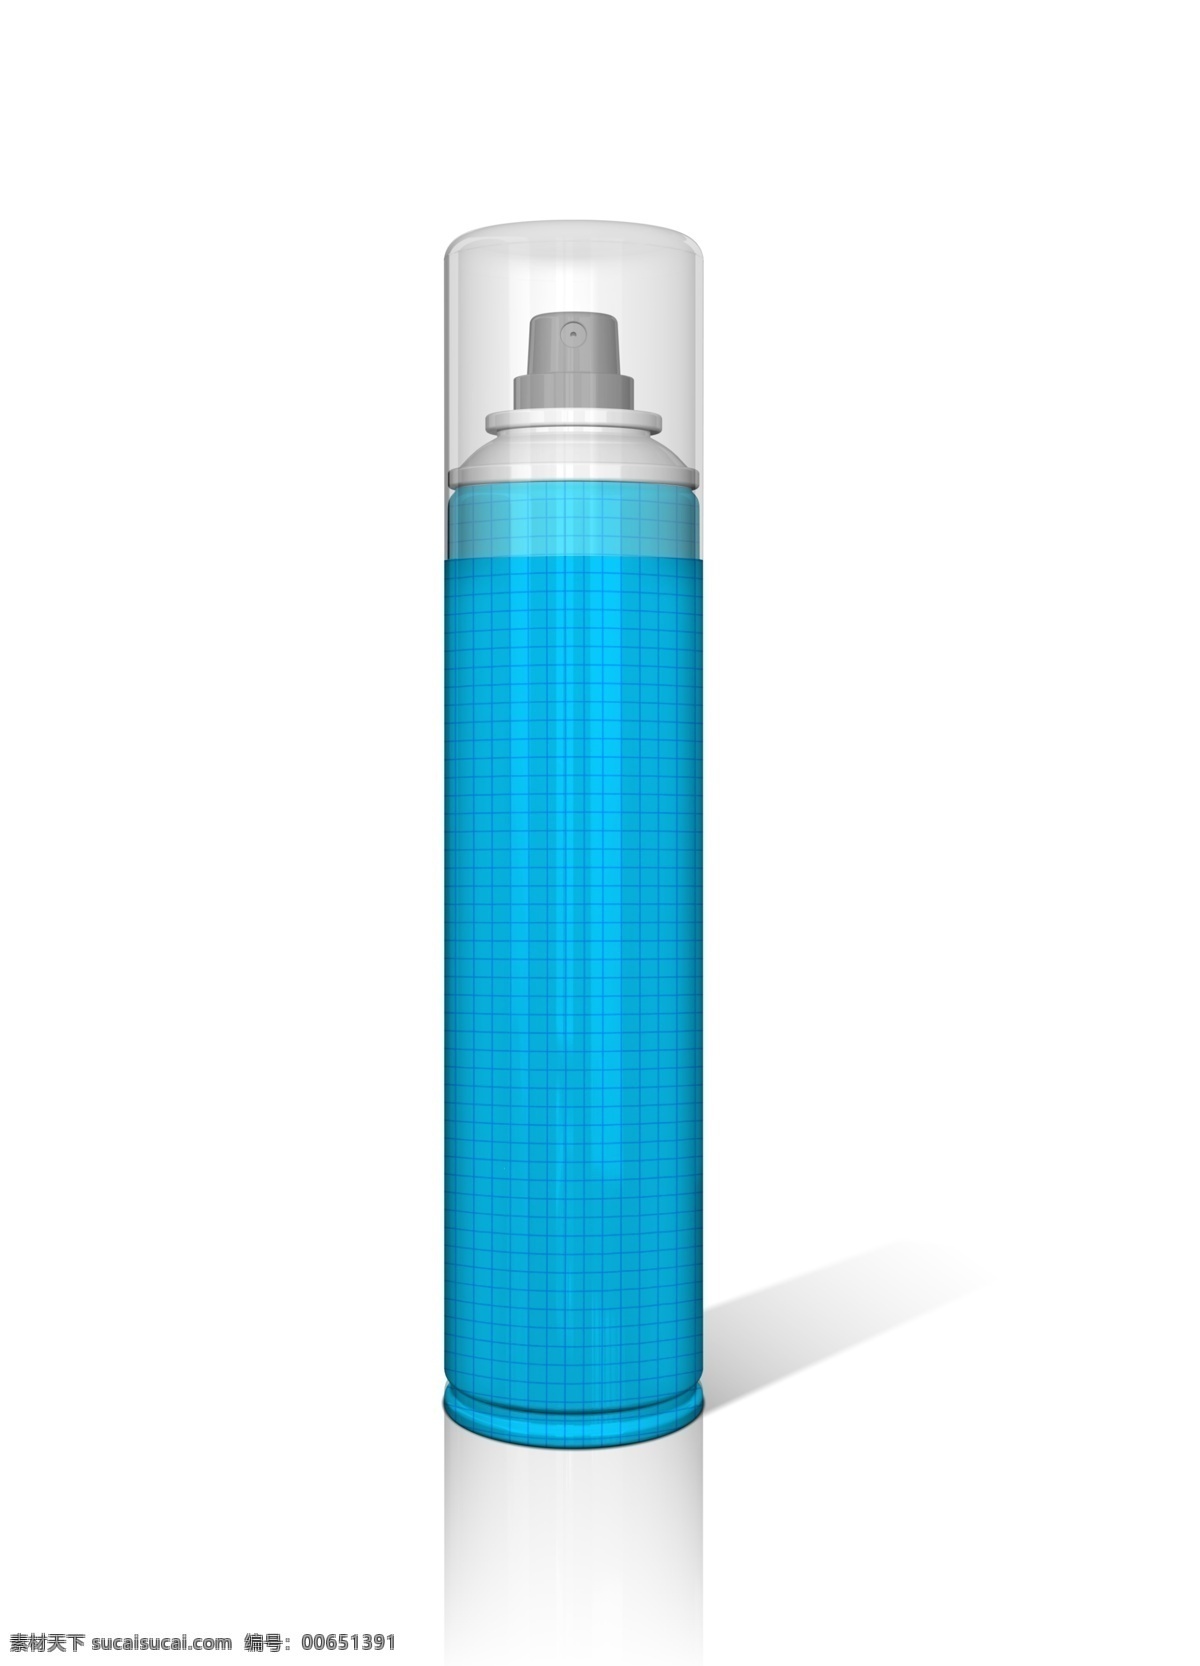 头发护理 喷雾 类 产品 外包装 模版 分层 源文件 设计模板 智能对象 效果展示 产品效果图 应用效果图 透视效果图 头发 蓝色 瓶子 包装 白色